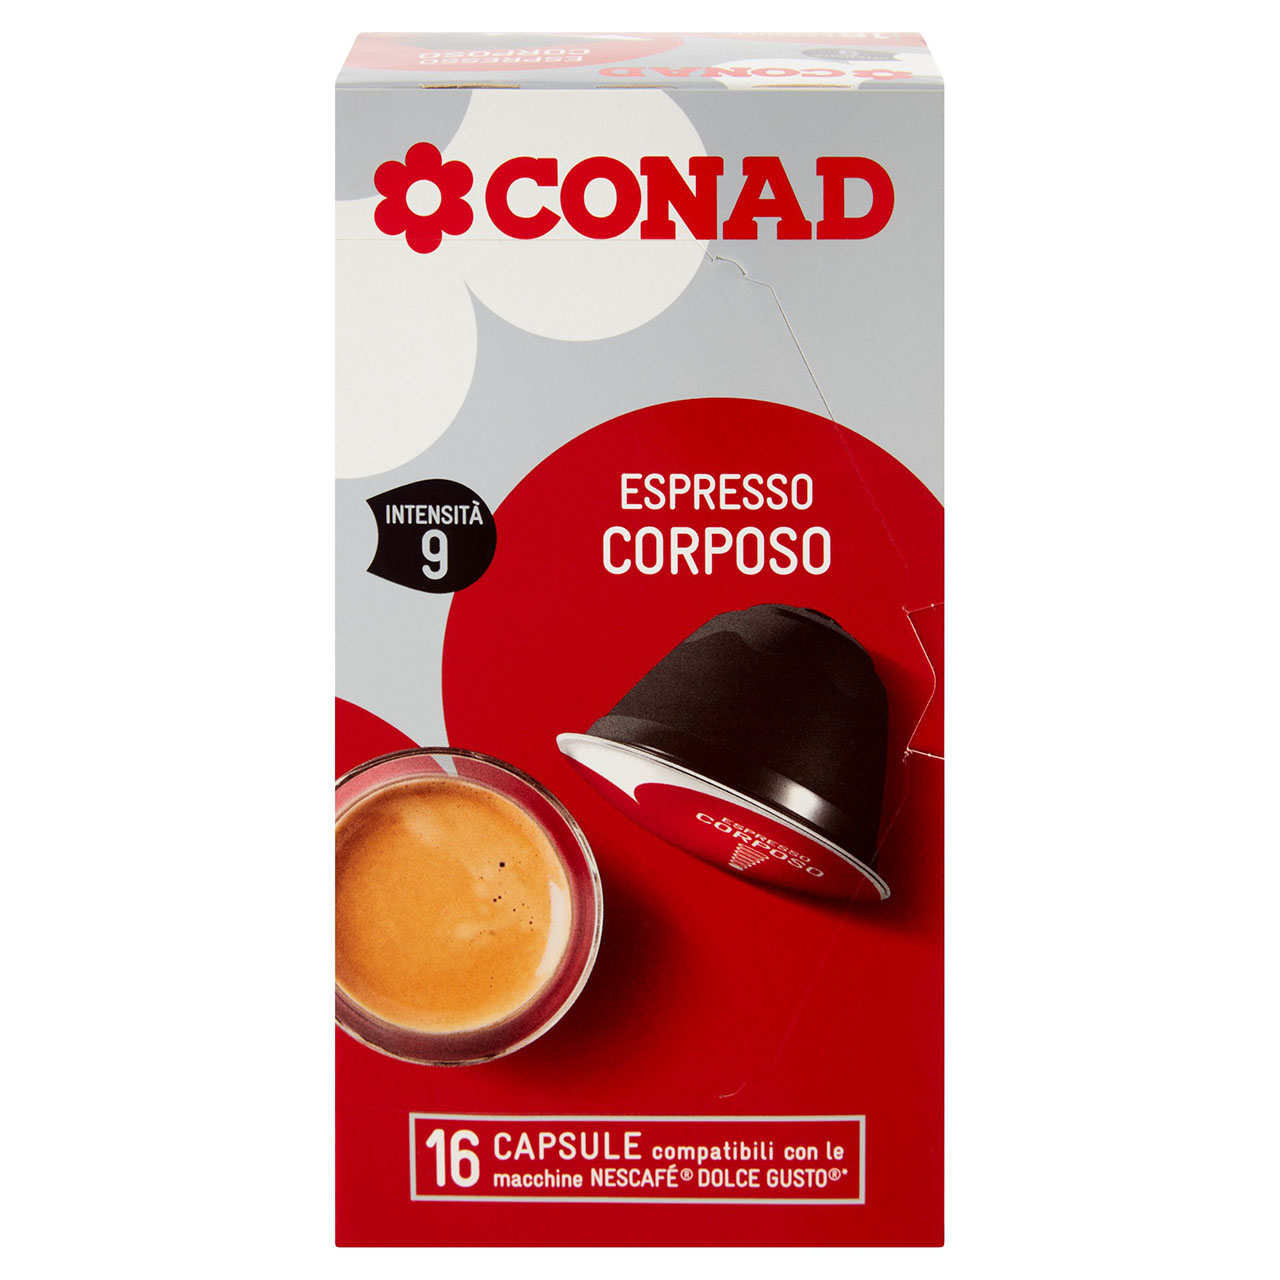 Capsule Espresso per Nescafé Dolce Gusto Conad